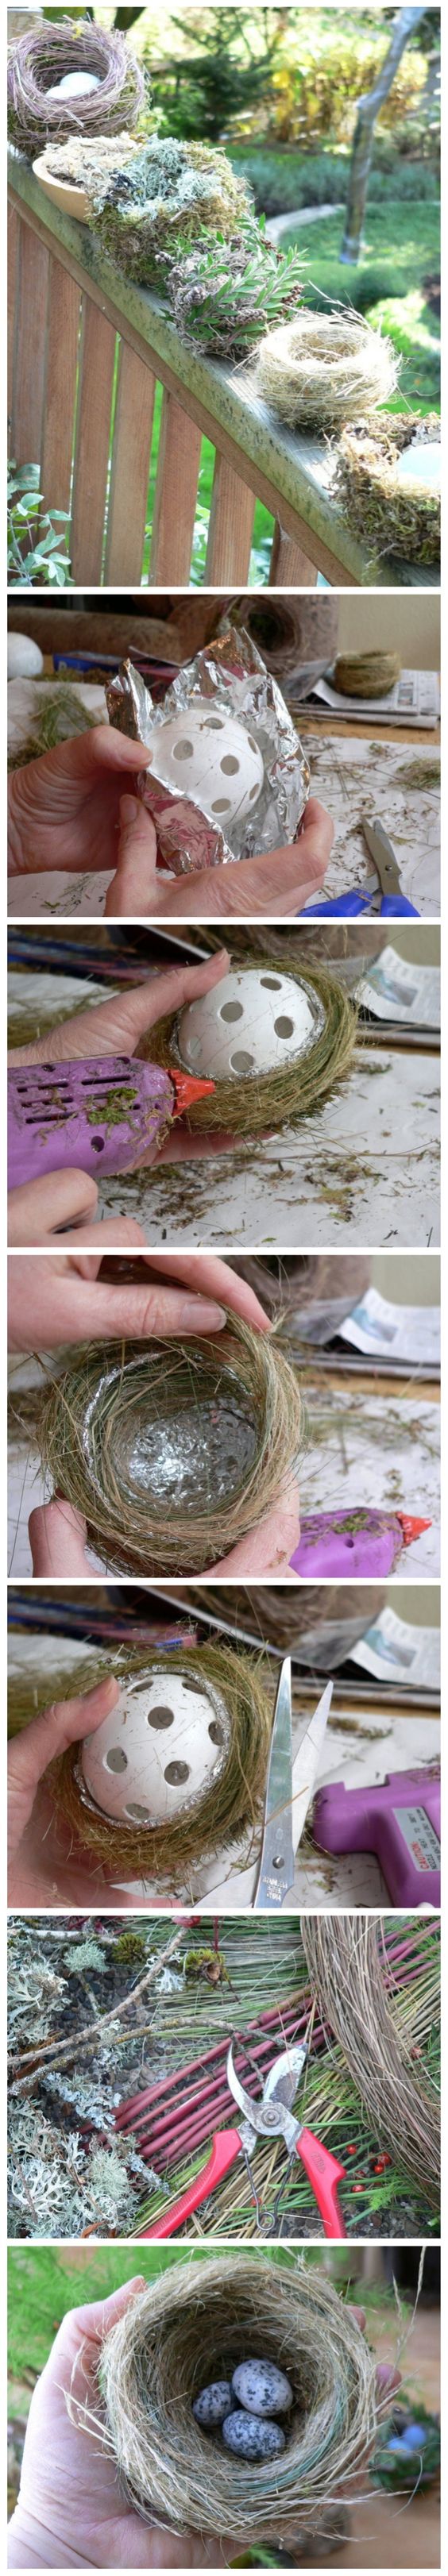 How to make a decorative bird nest